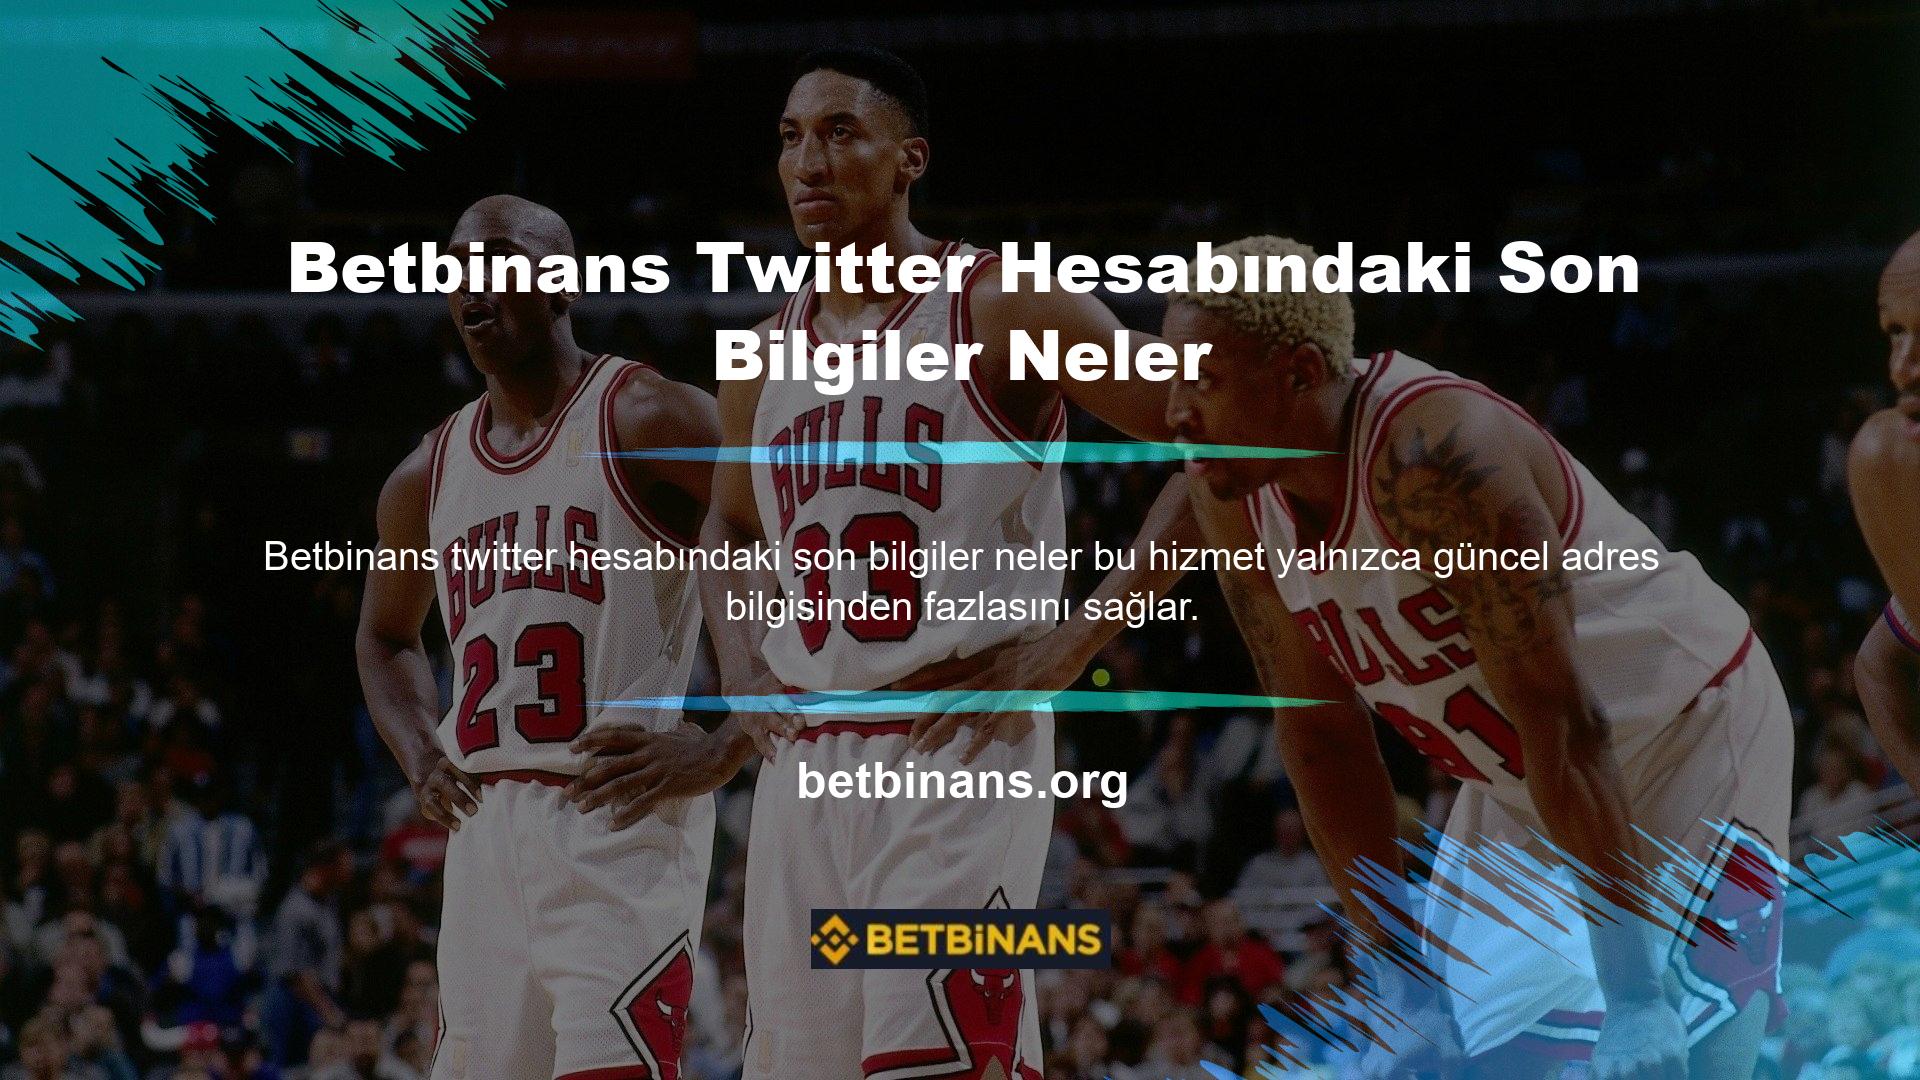 Yeni güncellemeler için Betbinans Twitter hesabını da takip edebilirsiniz